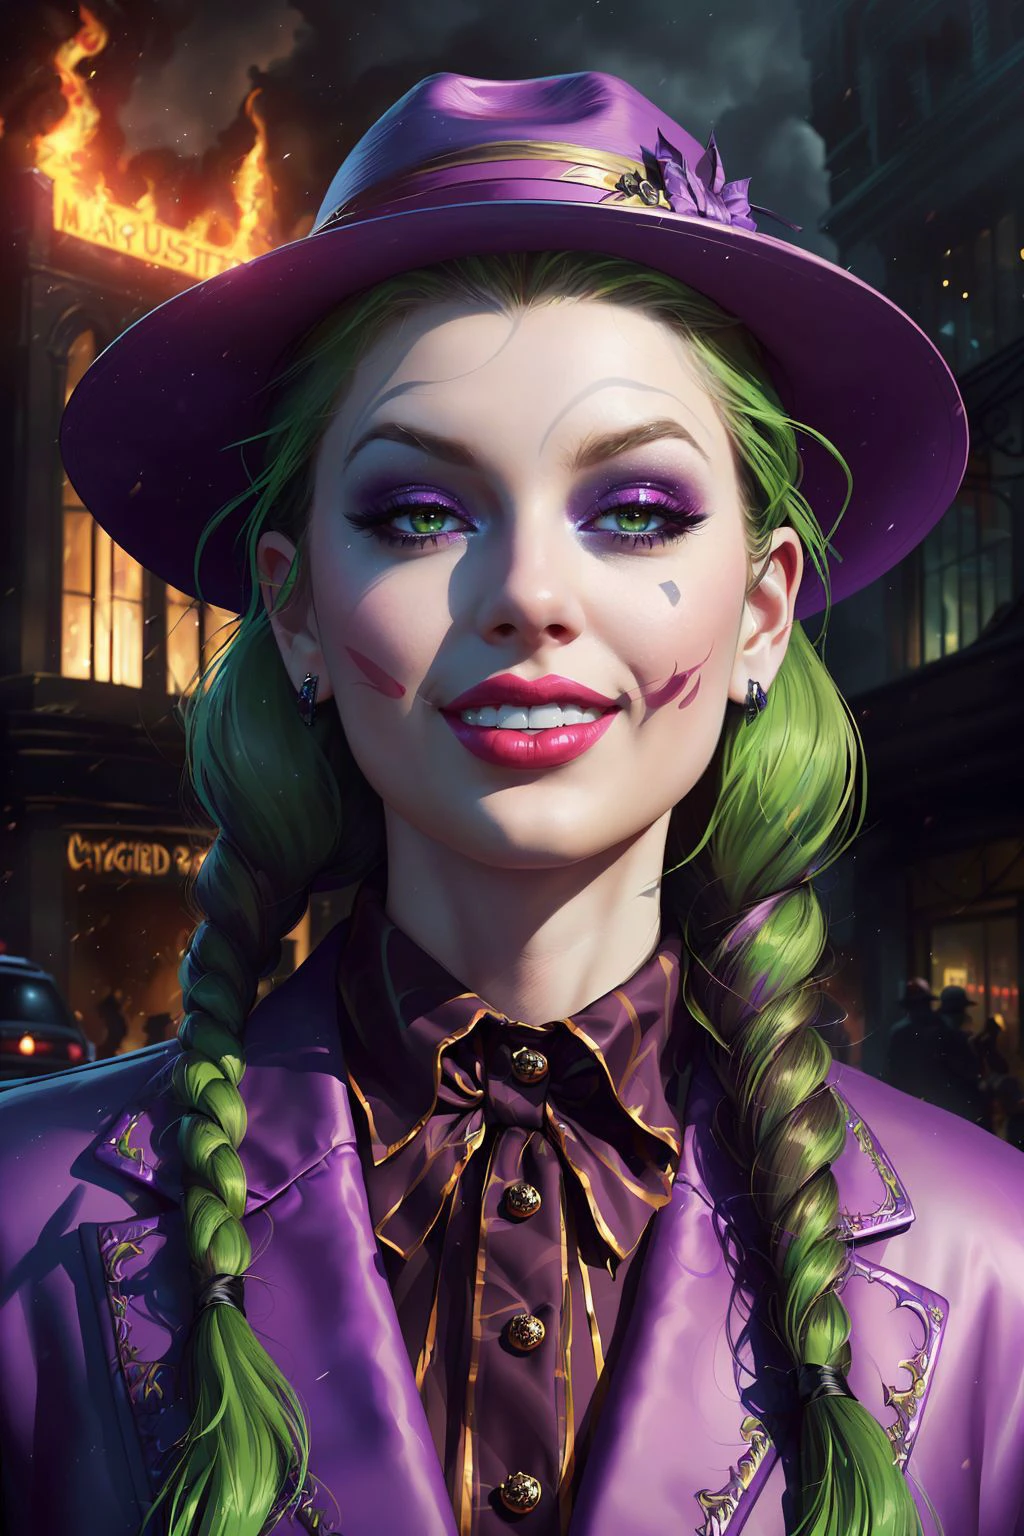 一幅令人惊叹的数字绘画 (泰勒斯威夫特:1.0),独自的, (中景:1.4), 实际的, 杰作, 最好的质量, 高详细, (饰演 女版小丑, paint a 杰作 in vibrant 8K quality. 穿着标志性的紫色套装，戴着一顶相配的宽边帽, 她出现在哥谭市混乱的街道上, 她脸上露出一丝威胁的笑容. 她的绿发在她脸旁飘扬，身后的城市燃烧起来, 这幅视觉震撼的作品捕捉了她对混乱的热爱.:1.3),(迈克·米格诺拉的风格:1.1),史诗级奇幻人物艺术, 概念艺术, 幻想艺术,  幻想艺术, 鲜明的高对比度,artstation 上的热门, 戏剧灯光, 环境光遮蔽, 体积照明, 情感, 变异艺术, 超详细的插图, 8千, 绚丽的灯光, 吸血鬼科技 ,(全高肖像:1.8),(用黑色丝带编成的辫子: 长的, 粗辫子整齐地编织，末端用黑色丝带系住, 框住脸部并强调纯真.:1.2),照片拍摄